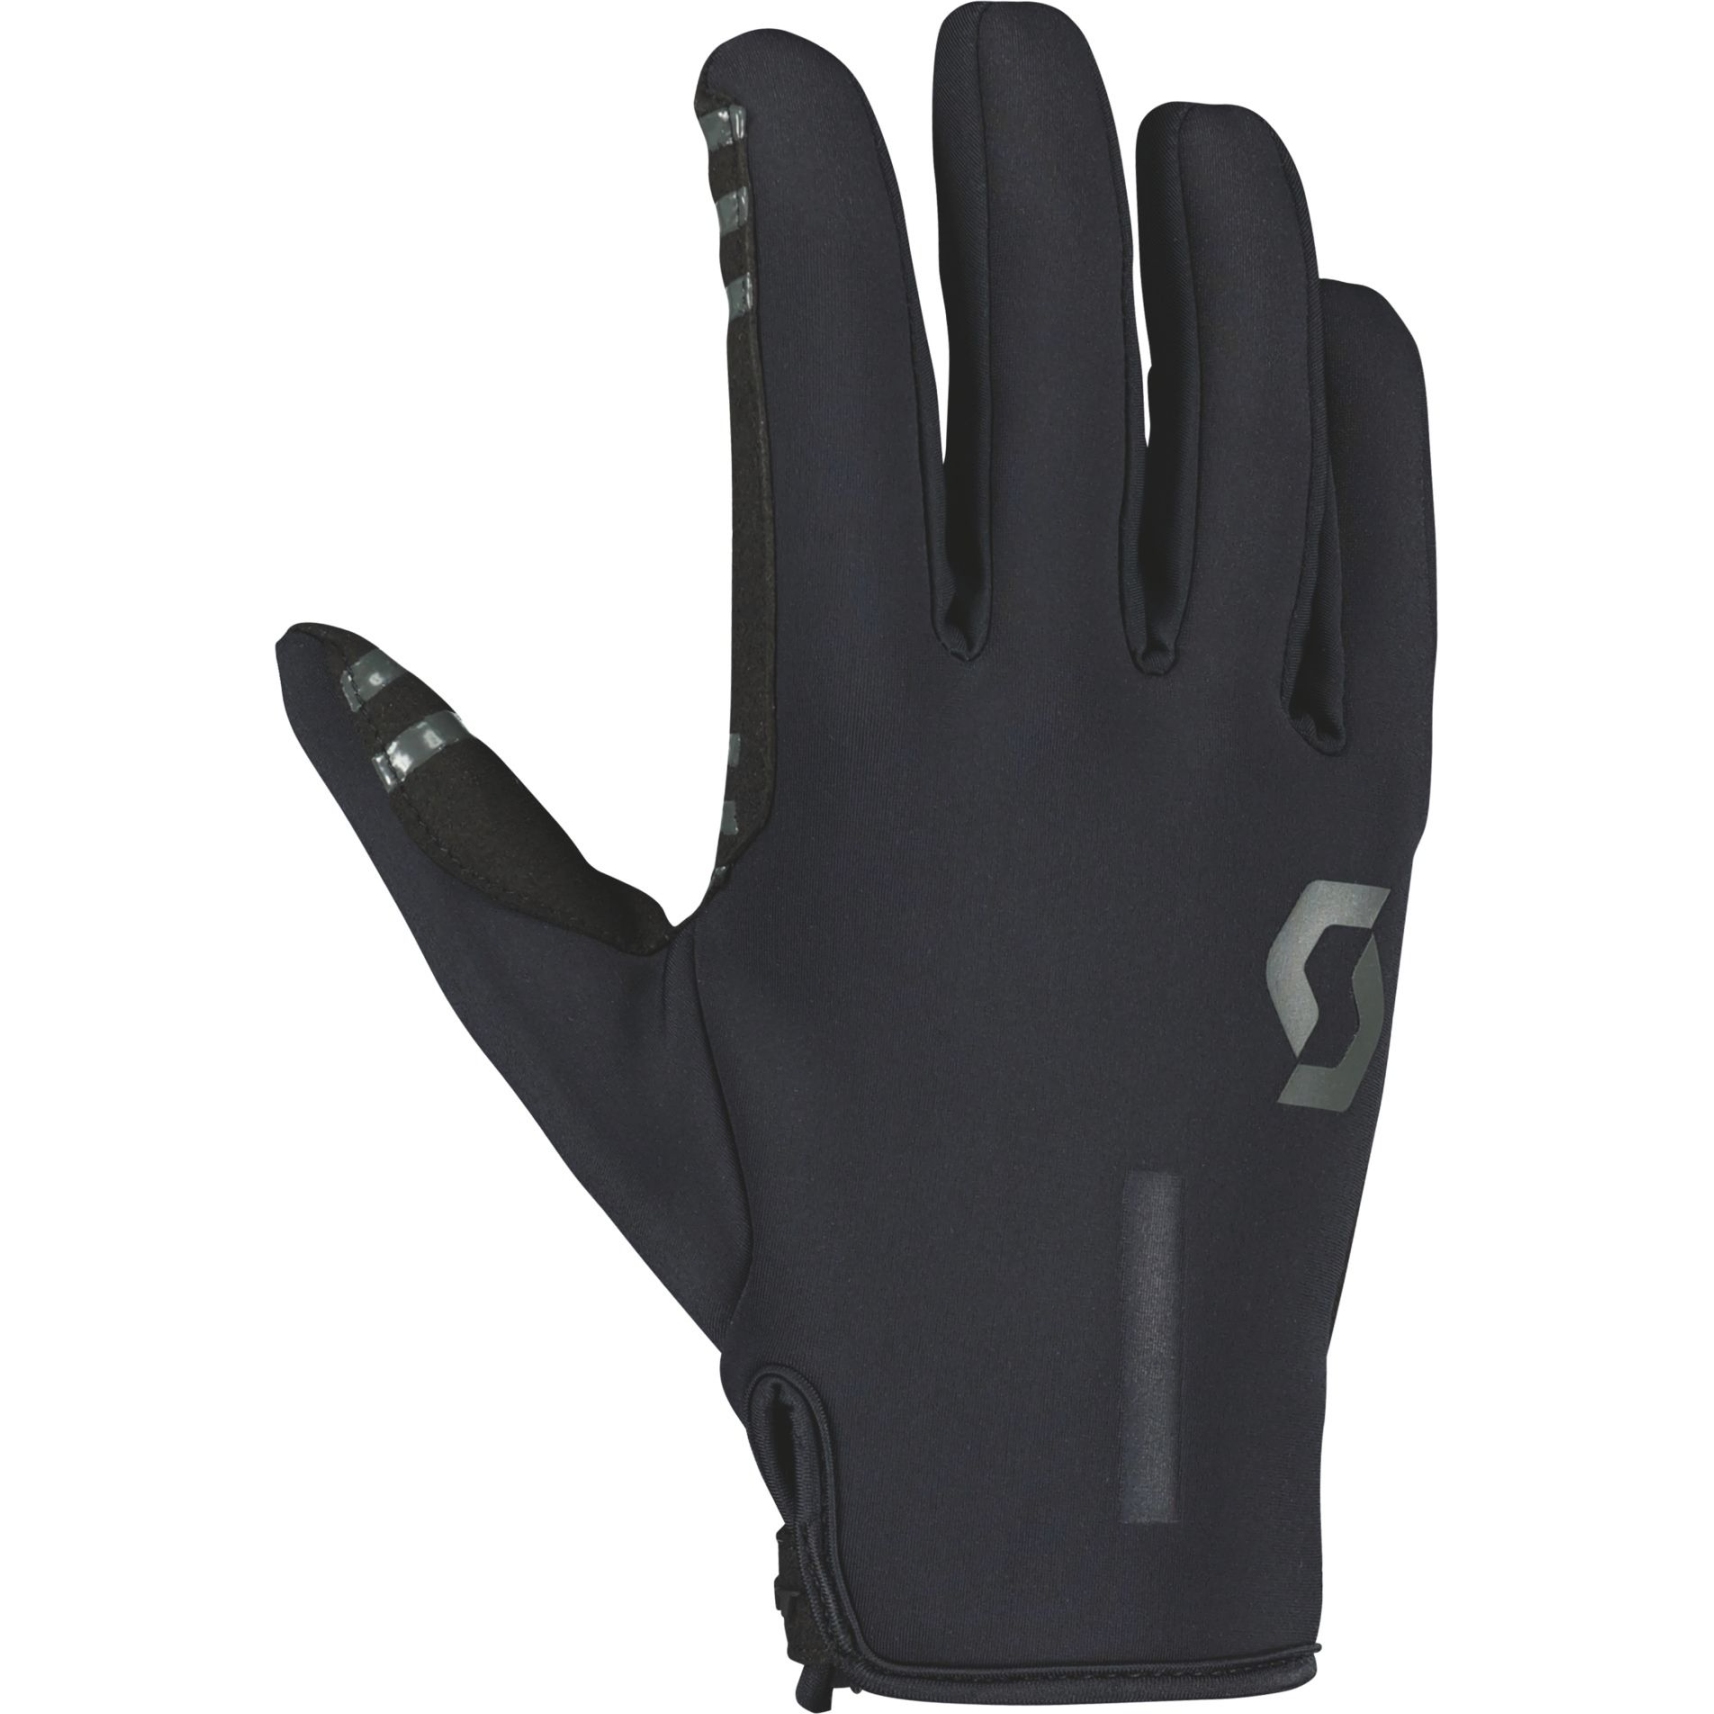 Productfoto van SCOTT Neoride Handschoenen - zwart